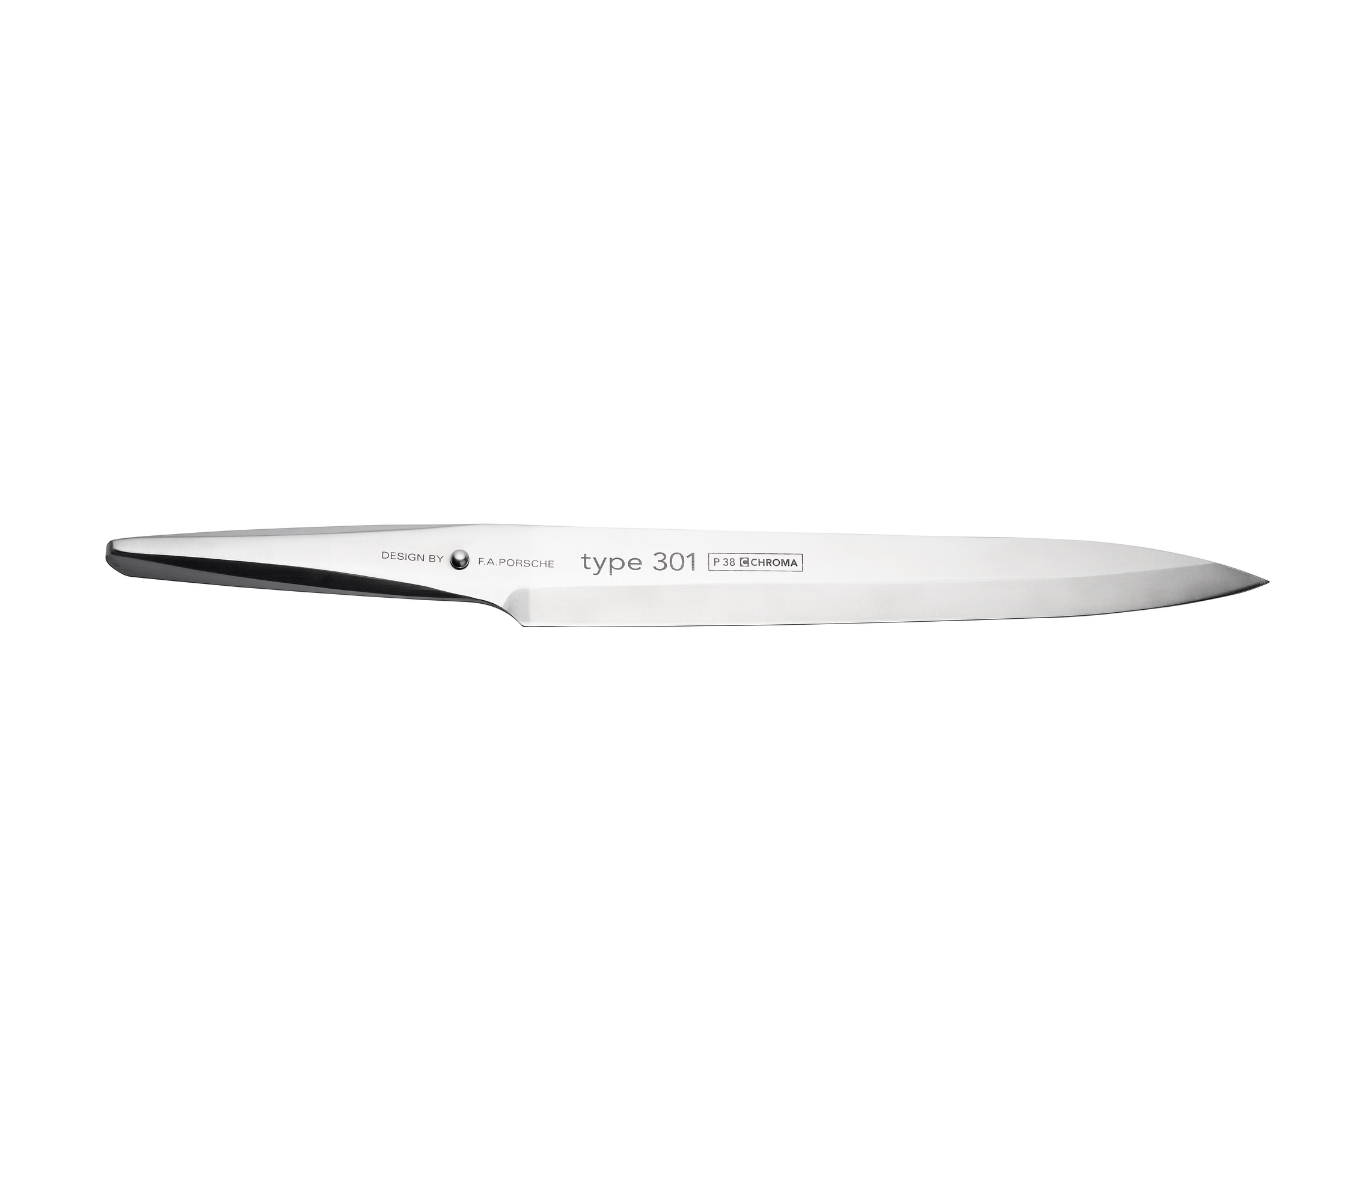 Das ein einseitig geschliffenes traditionelles japanische Messer das vor allem für die Zubereitung von Sashimi verwendet wird.